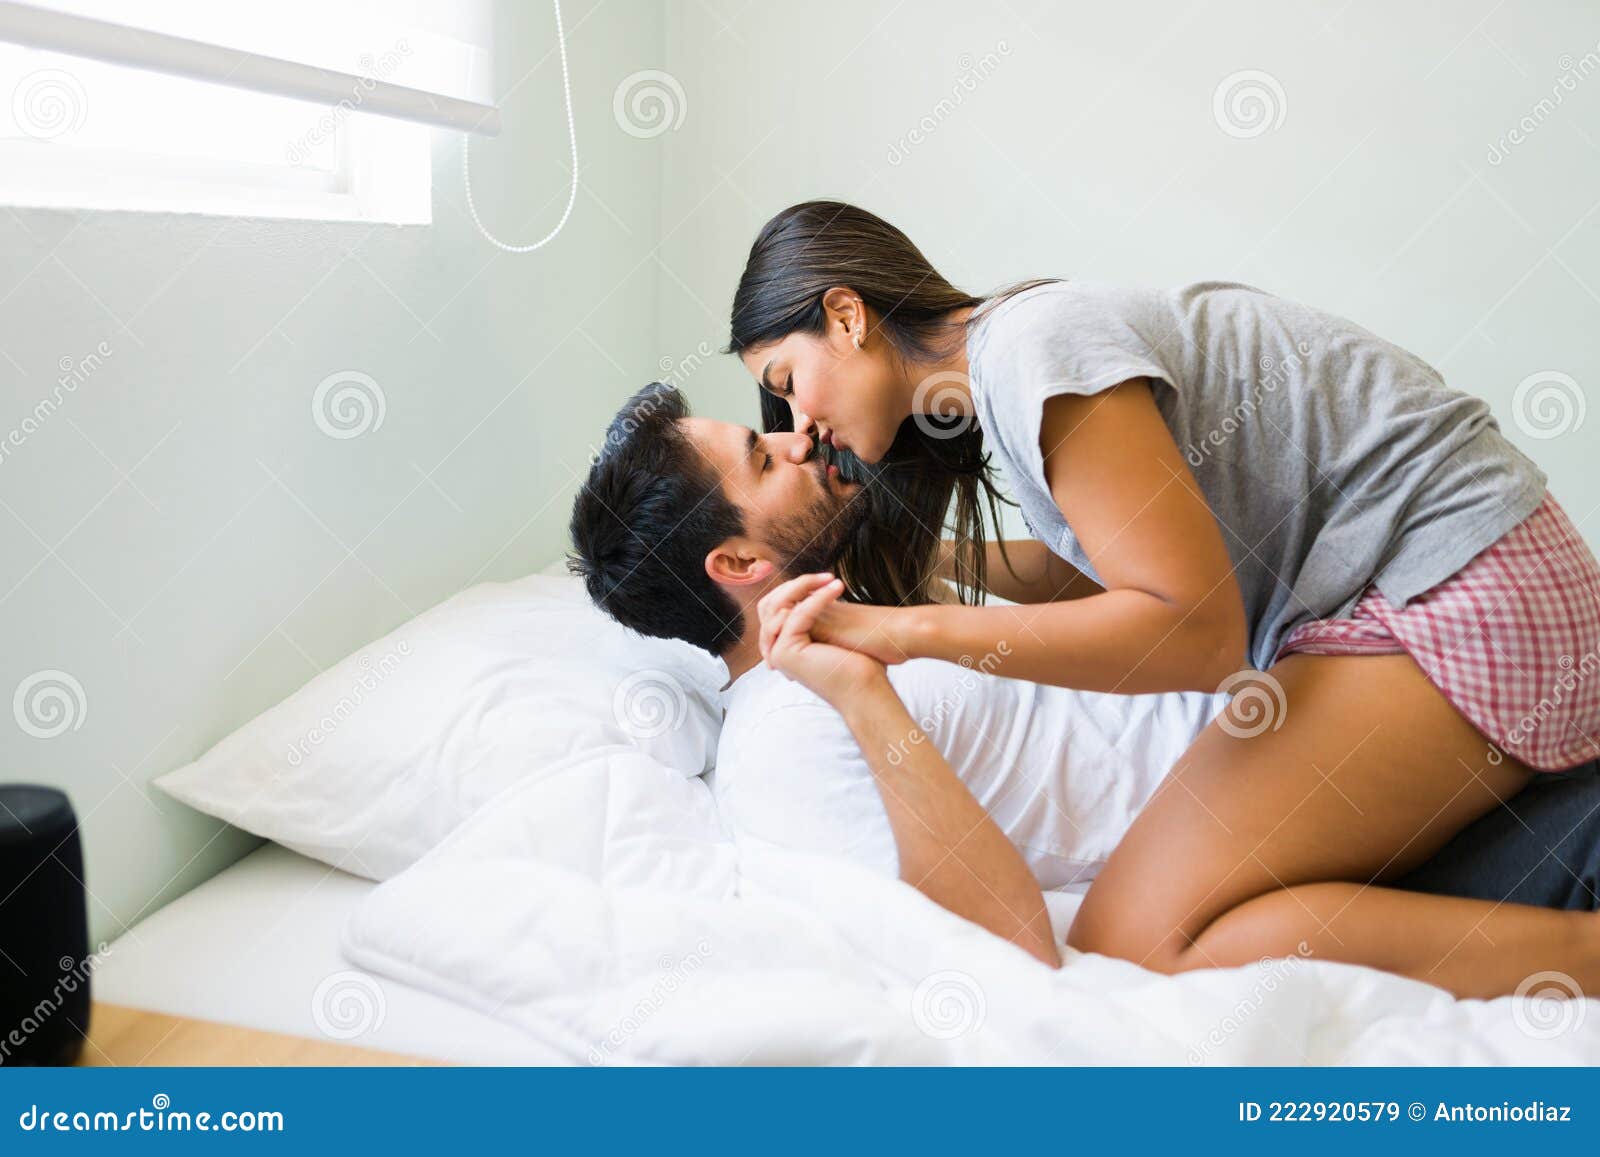 Sa petite amie le menotte au lit, ce qu'elle fait ensuite dépasse  l'entendement - Closer